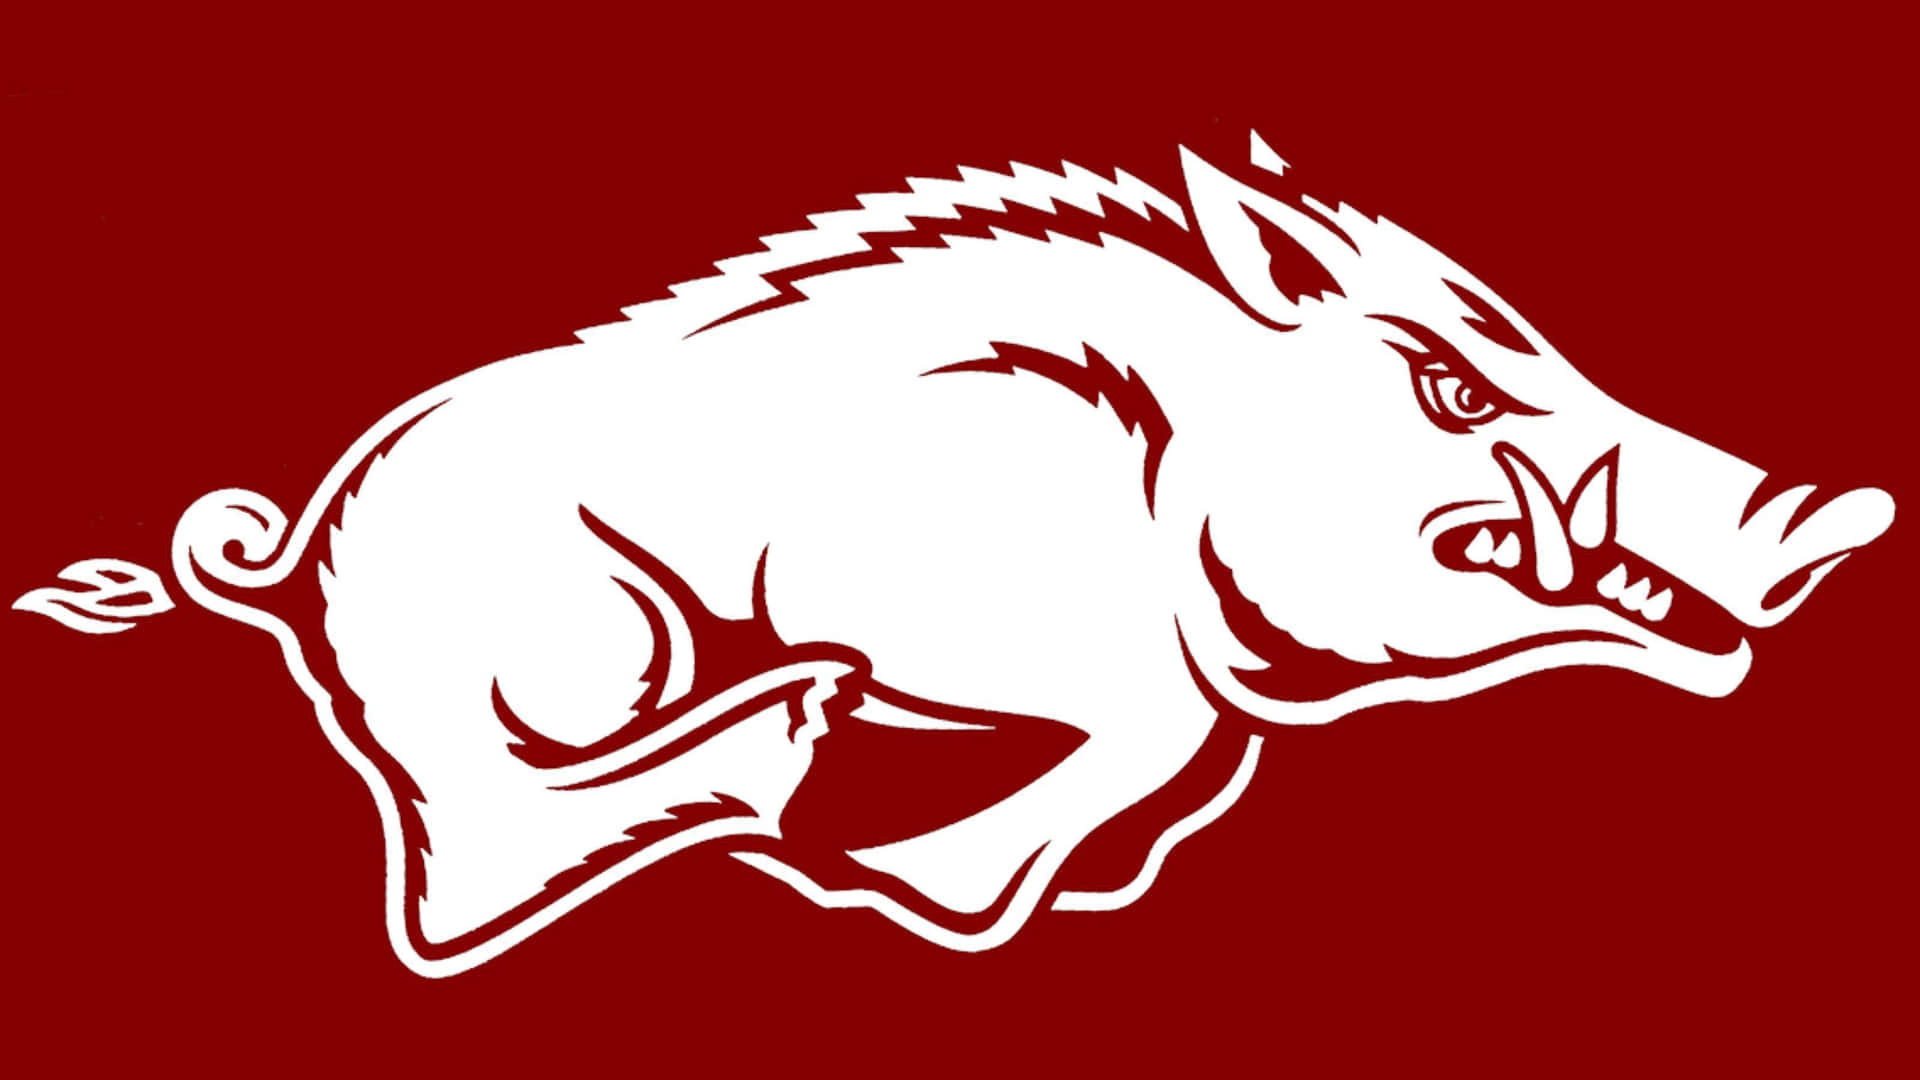 A White Arkansas Razorback Logo On A Maroon Background Wallpaper